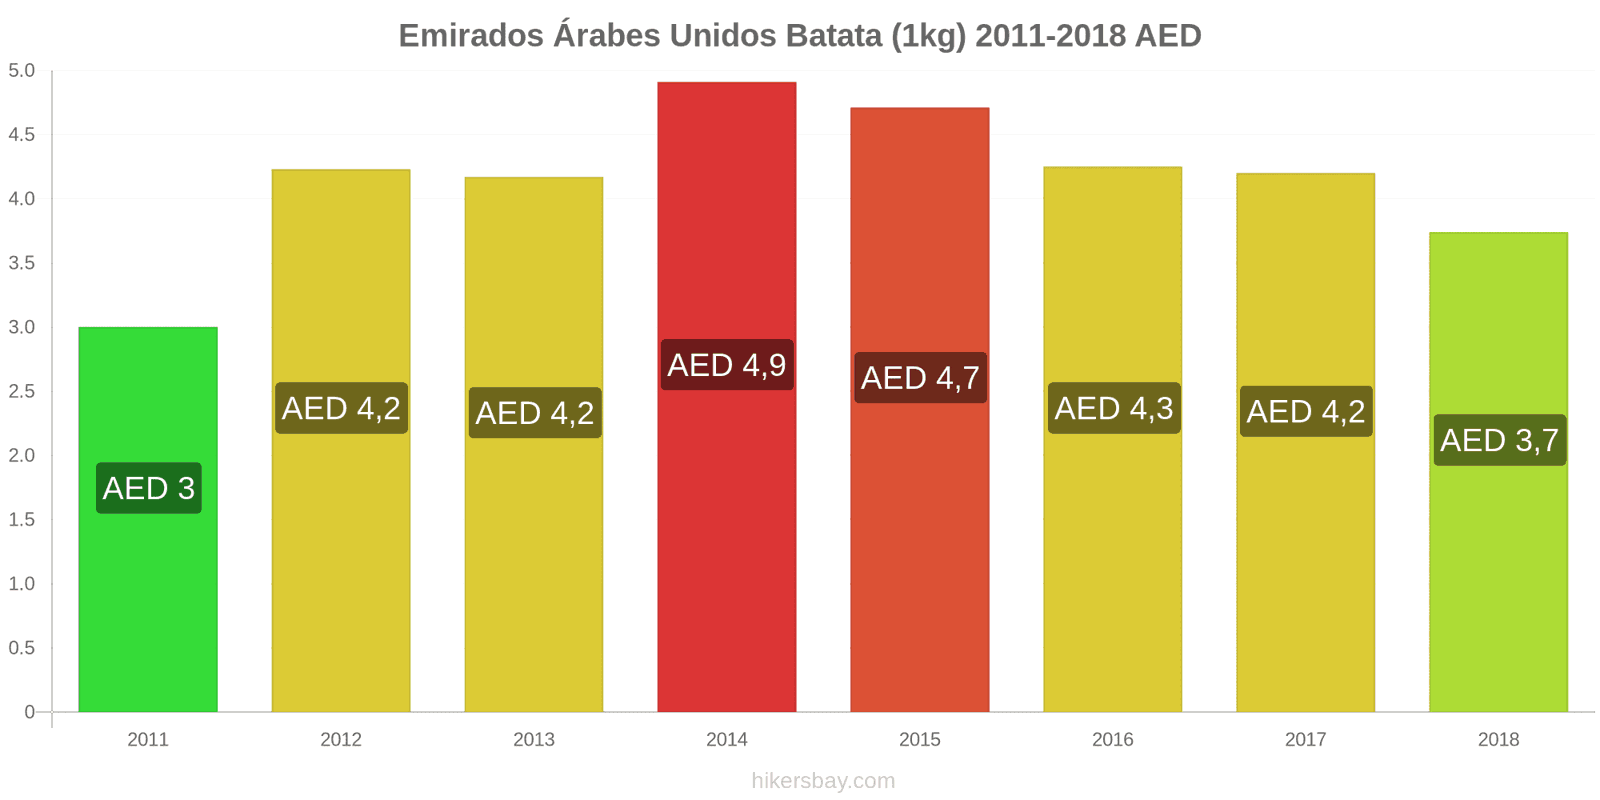 Emirados Árabes Unidos mudanças de preços Batatas (1kg) hikersbay.com